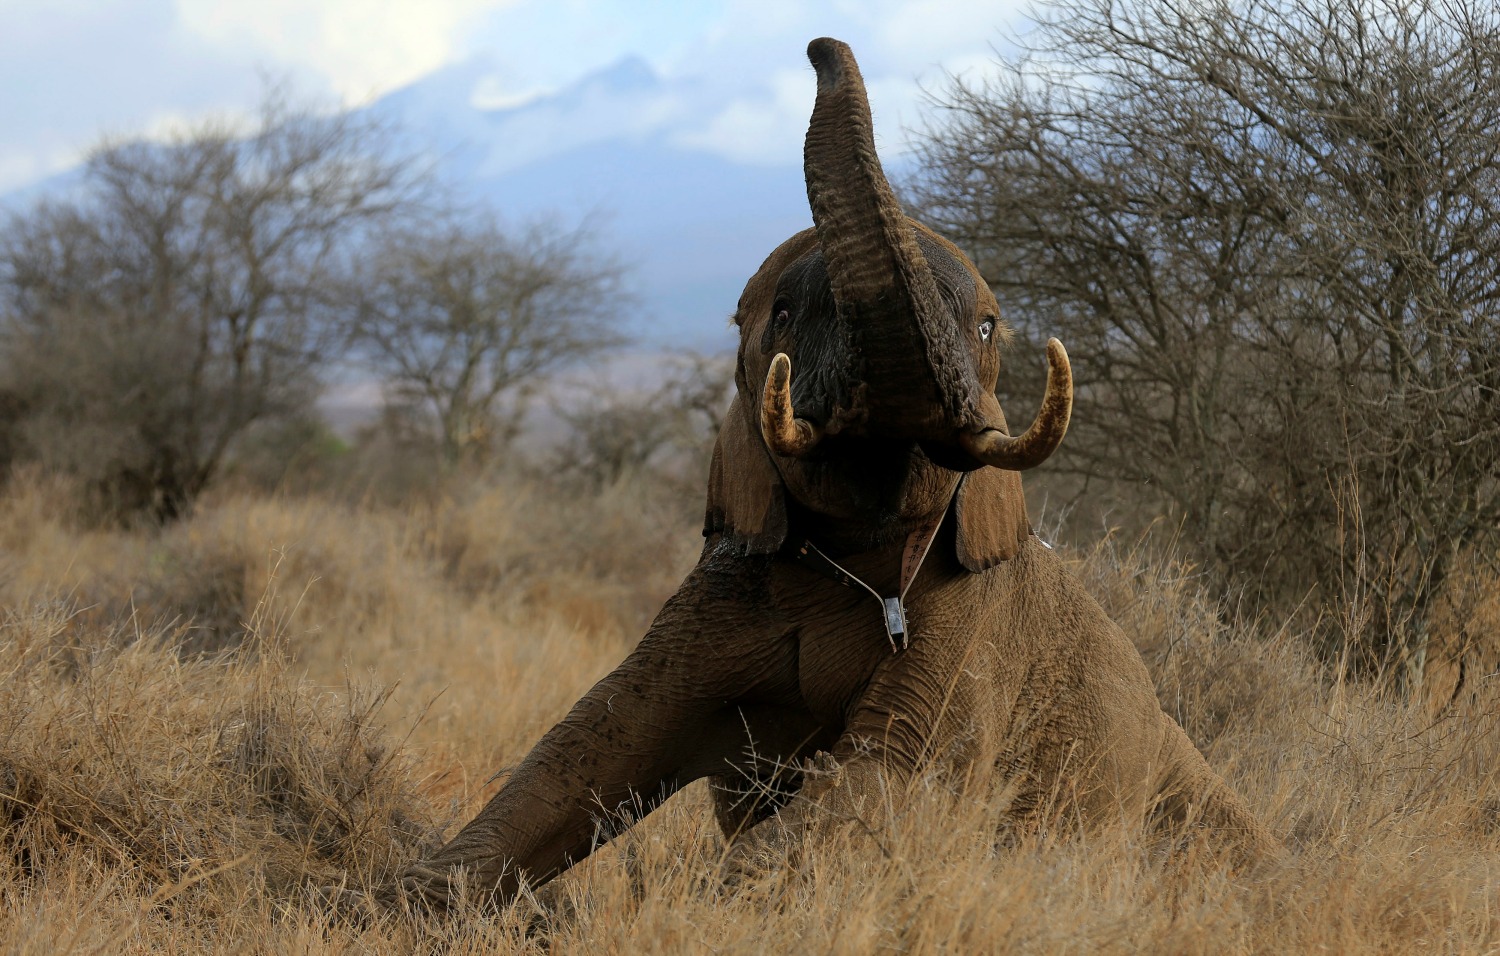 Conservacionistas monitorizan a los elefantes para asegurar los 'corredores' en Kenia